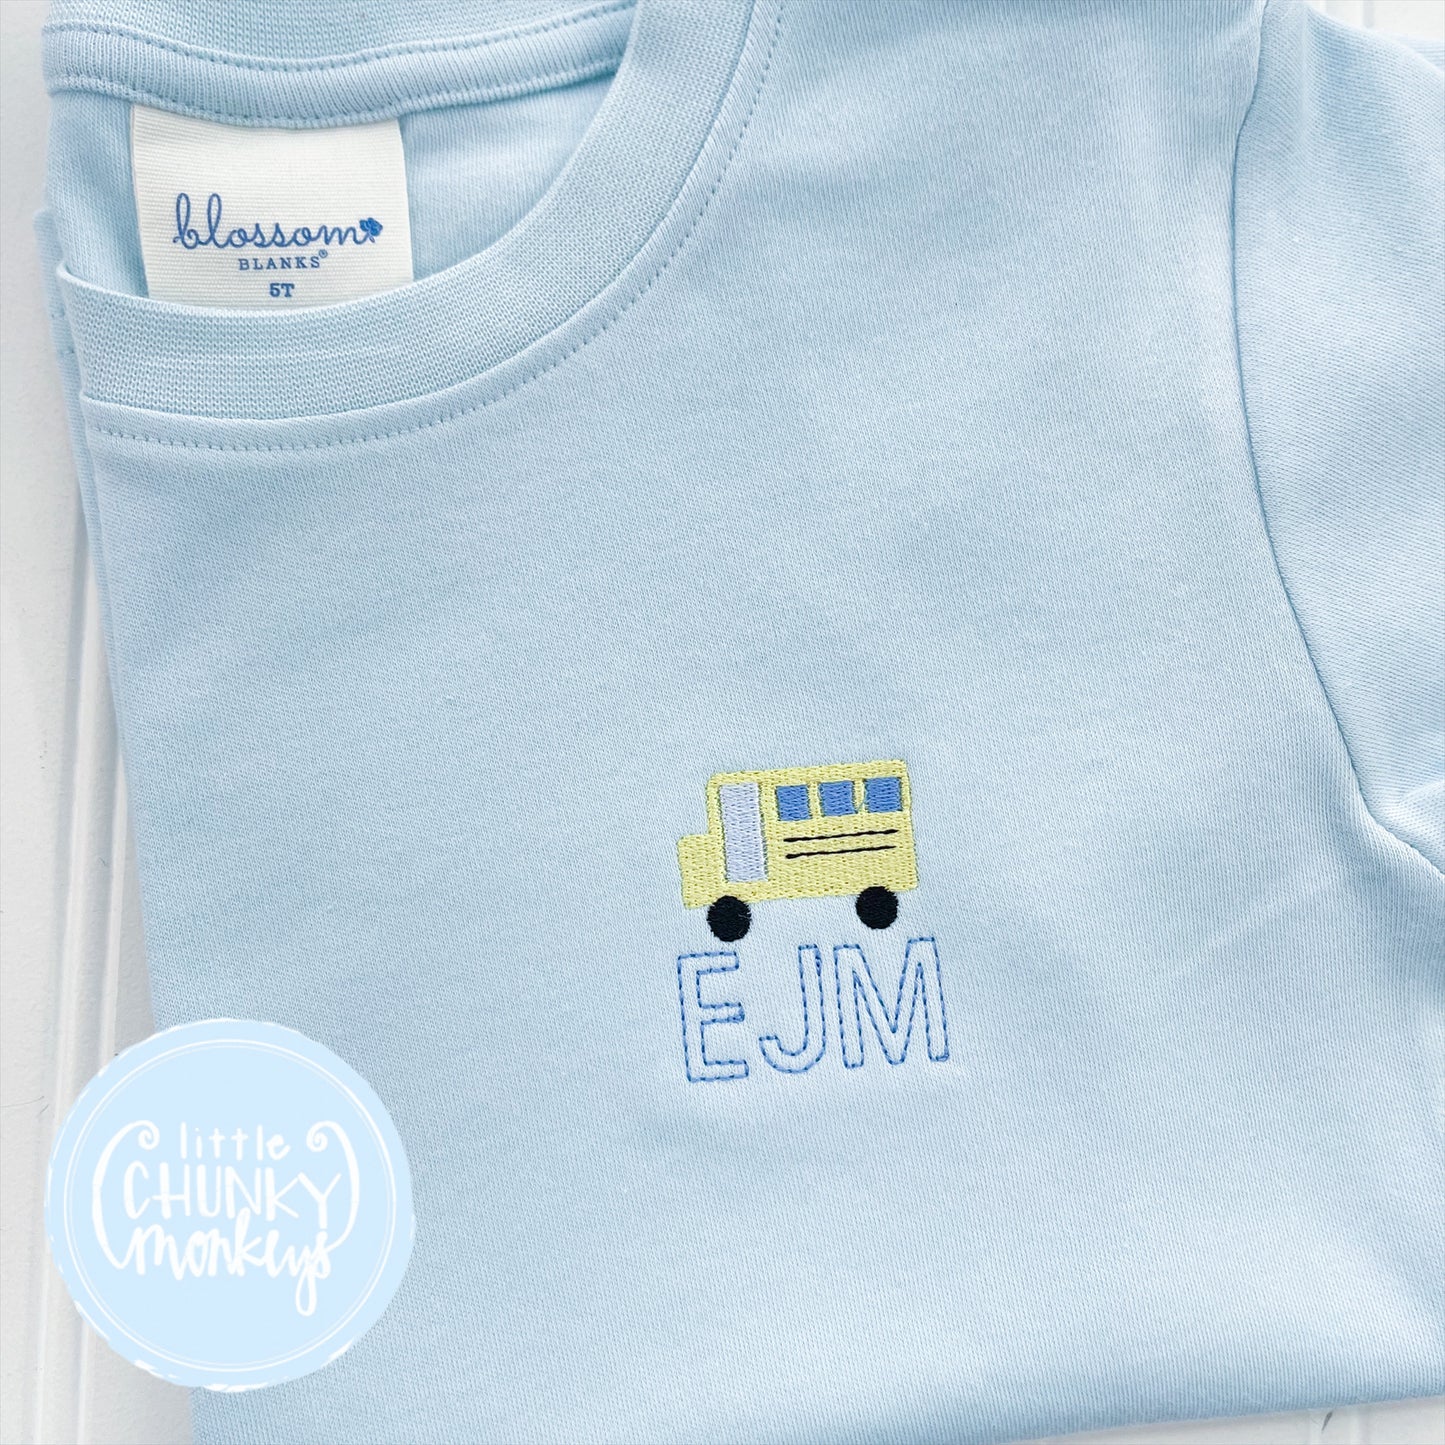 Boy Shirt - Mini Bus on Light Blue Shirt